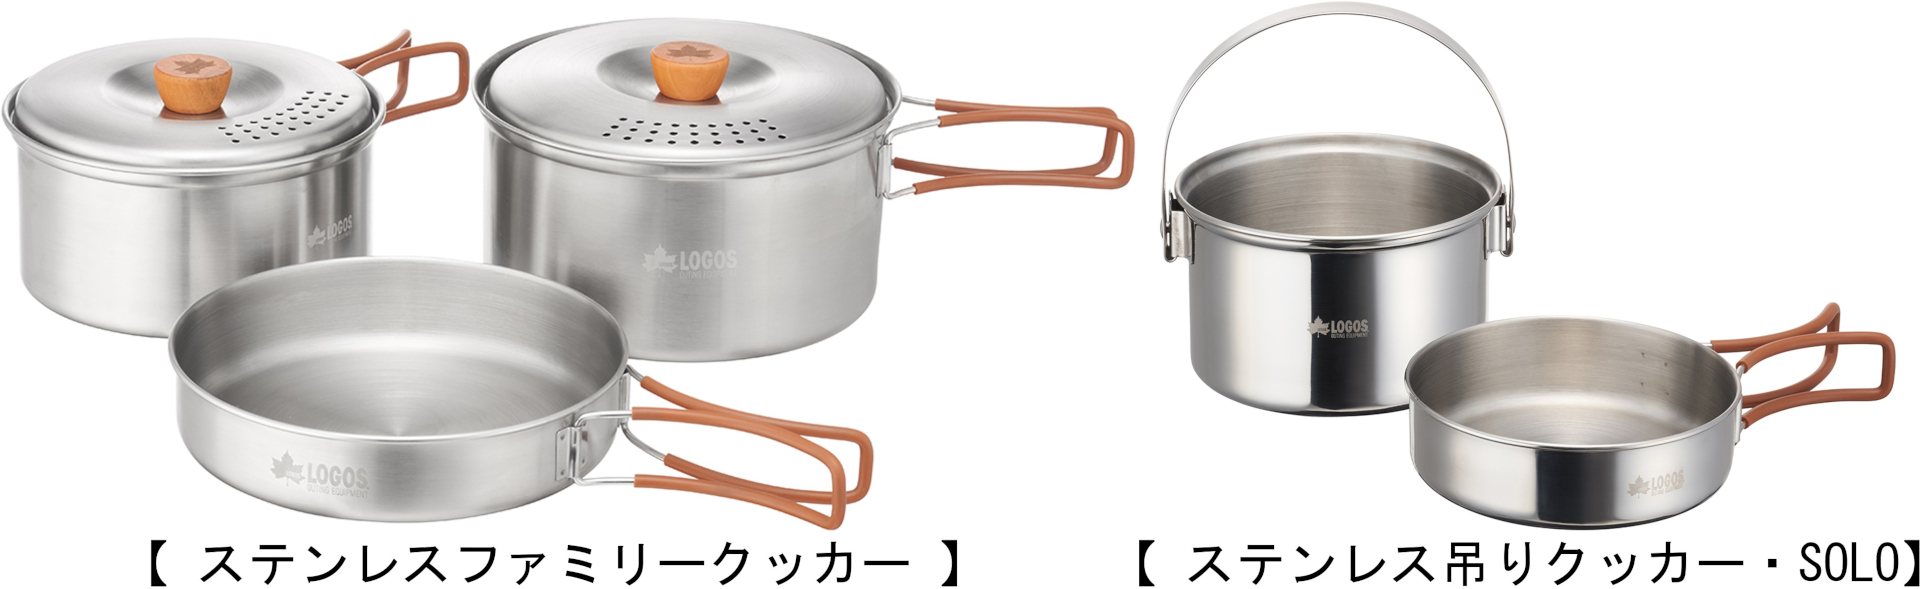 ロゴス、スタッキング収納できるステンレス製の鍋セット2種